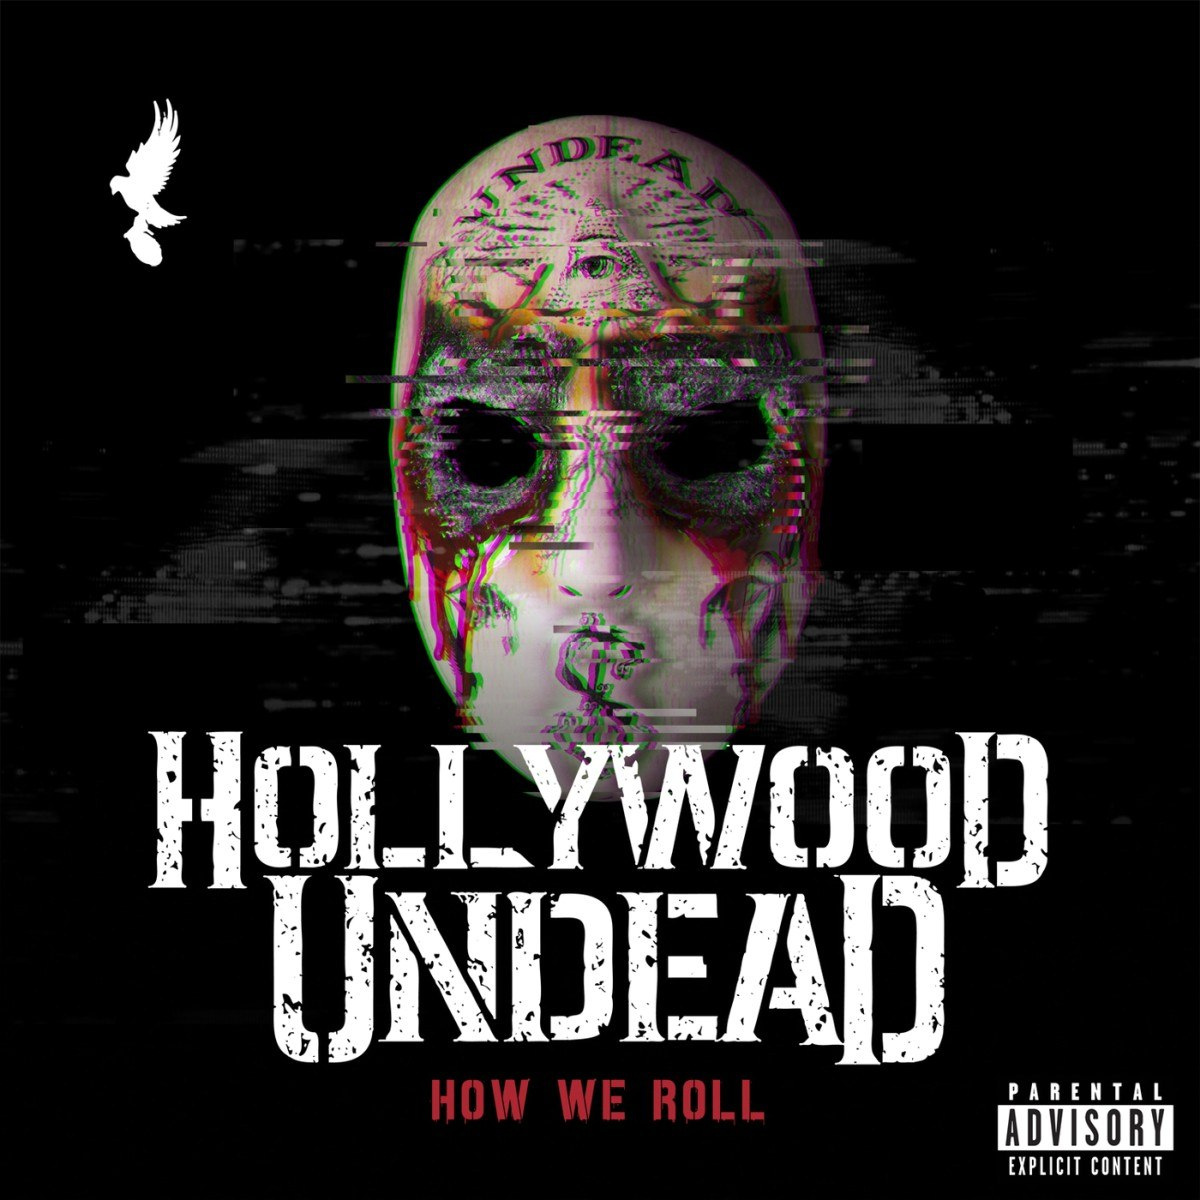 Мерч Hollywood Undead: обширный выбор по демократичным ценам